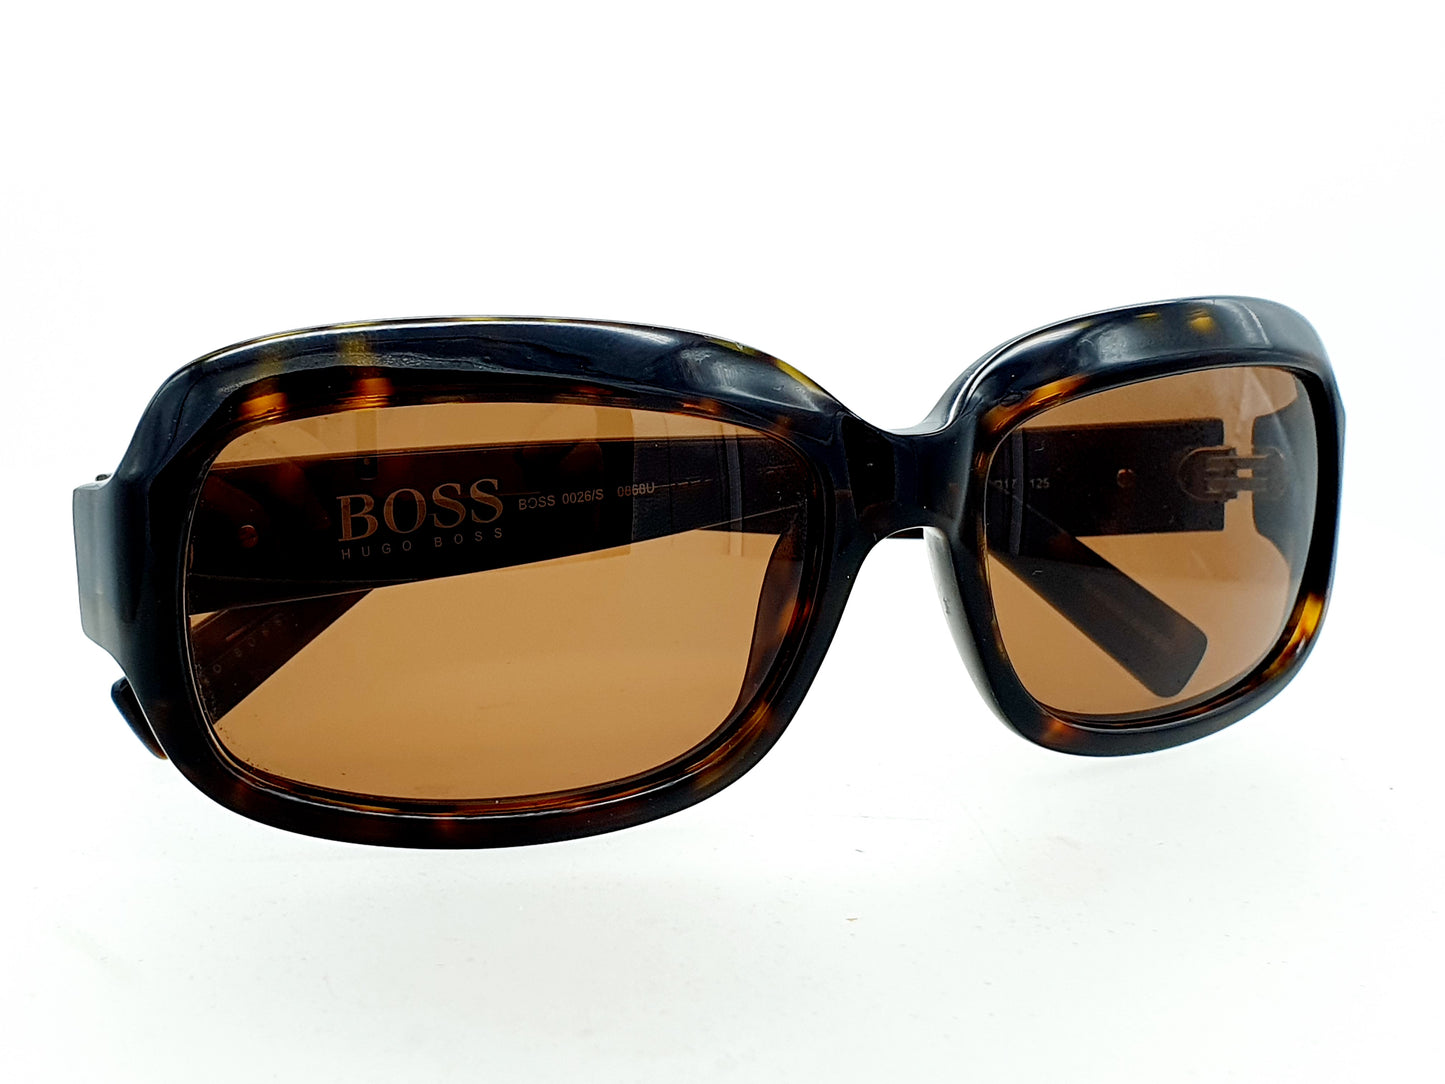 BOSS Hugo Boss 0026-S